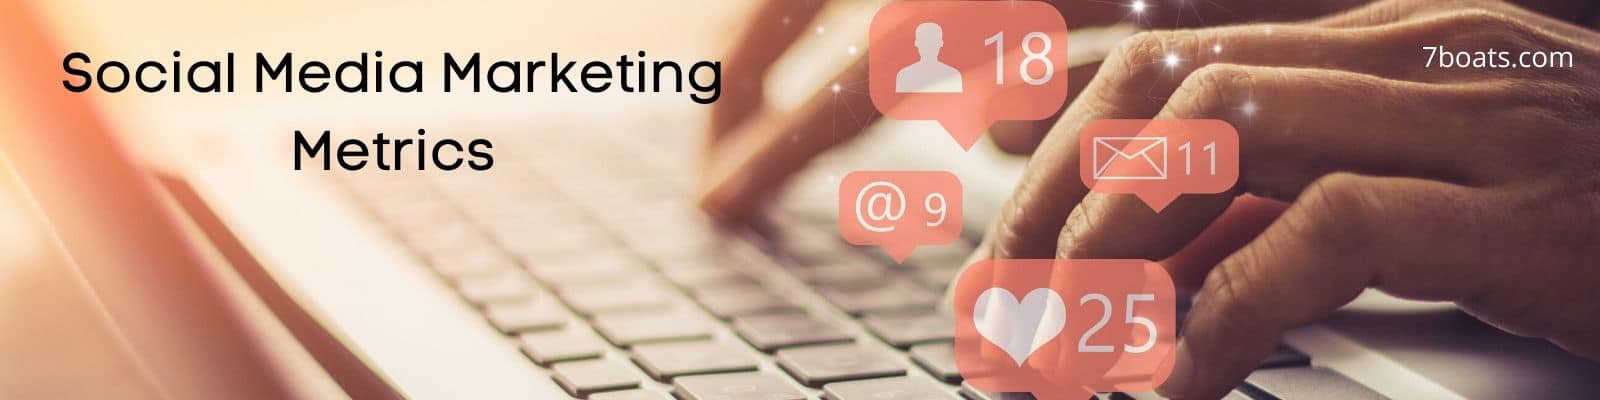 social media marketing metrics